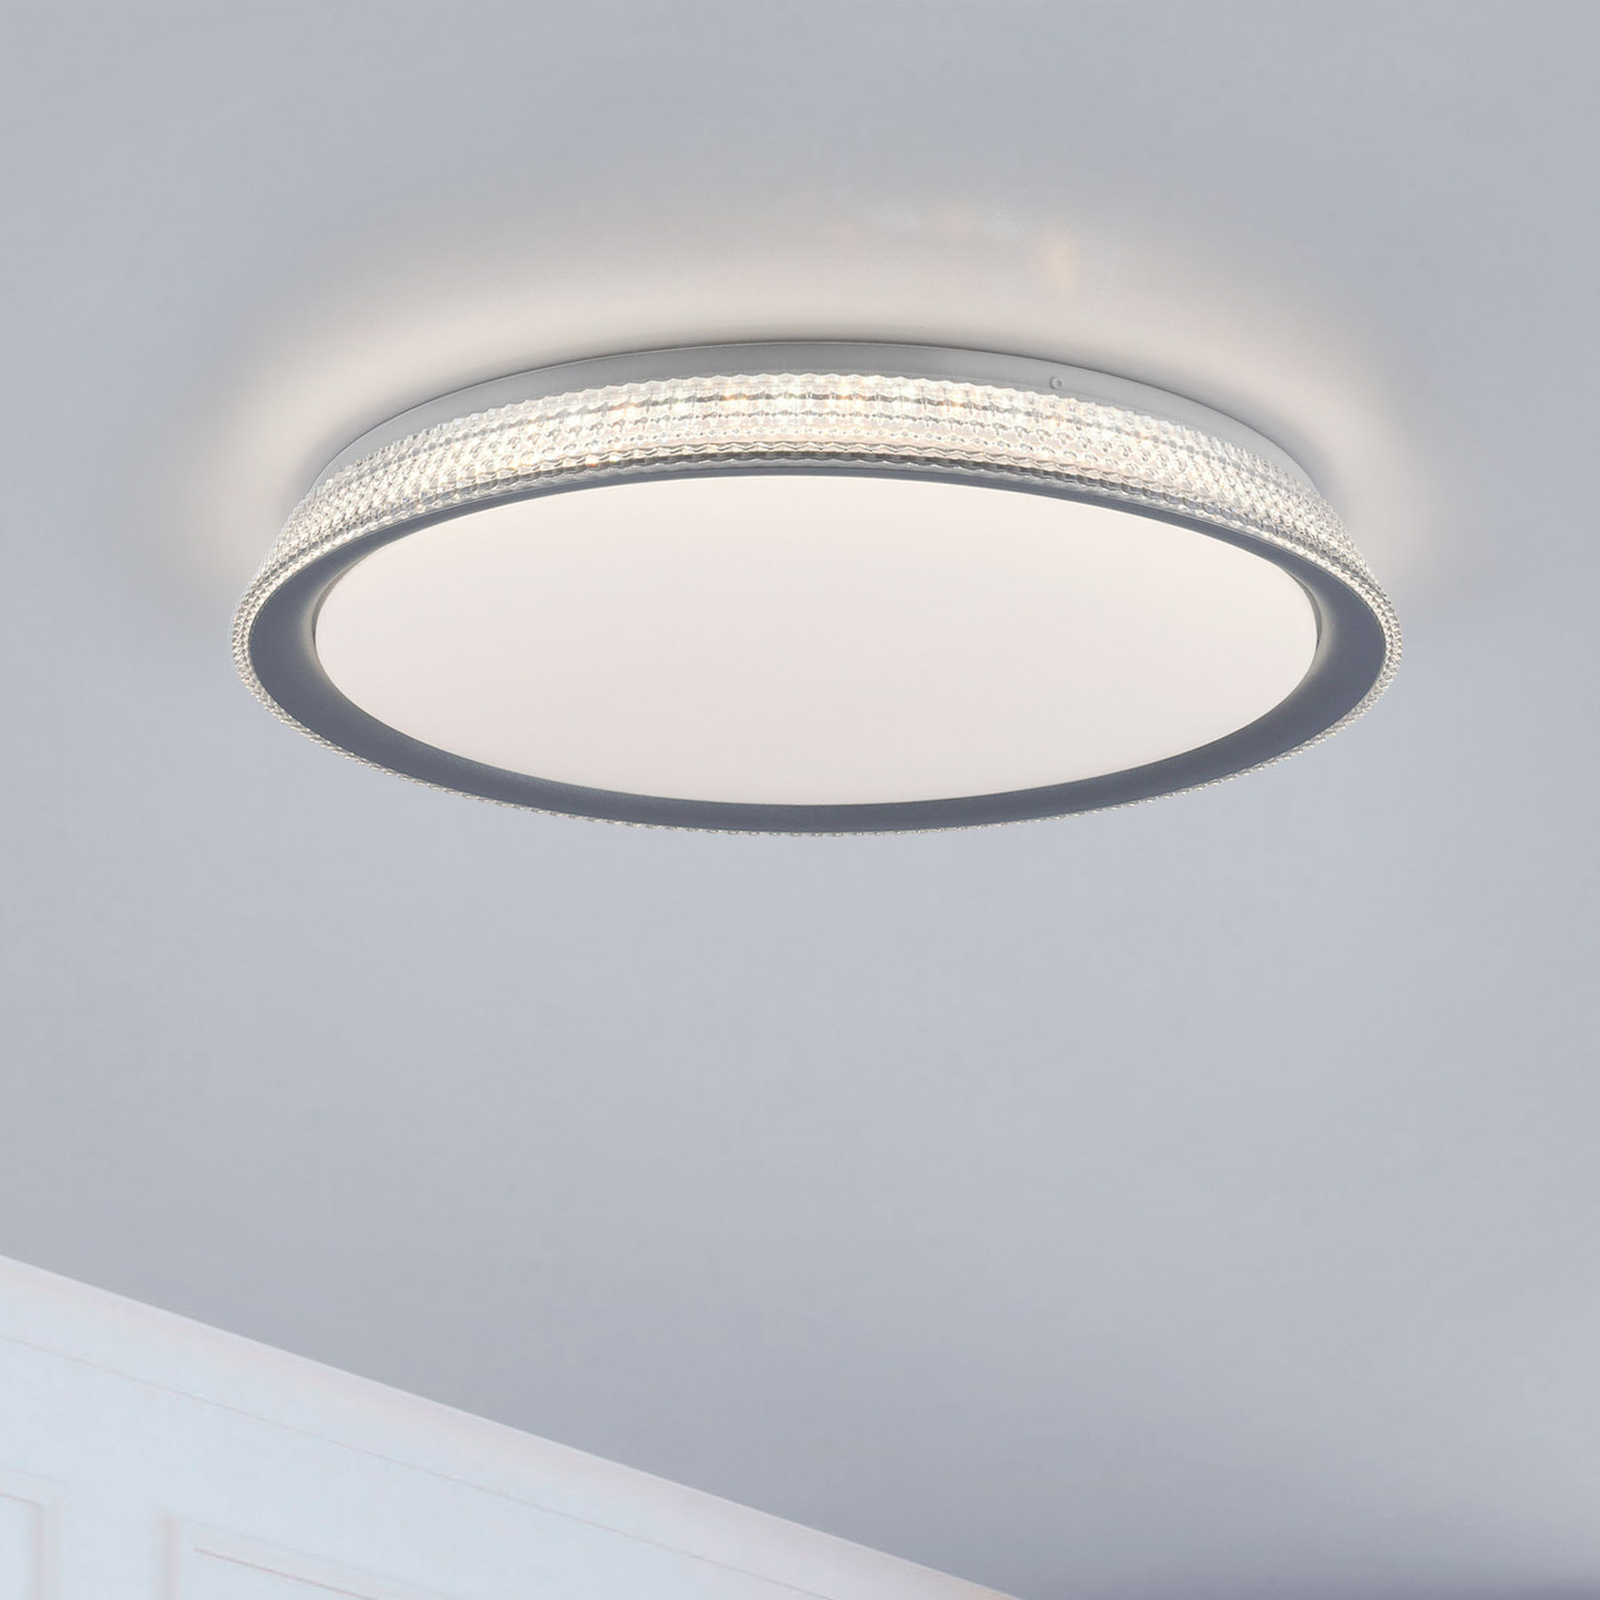 LED plafondlamp Kari, dimbaar Switchmo, Ø 51cm